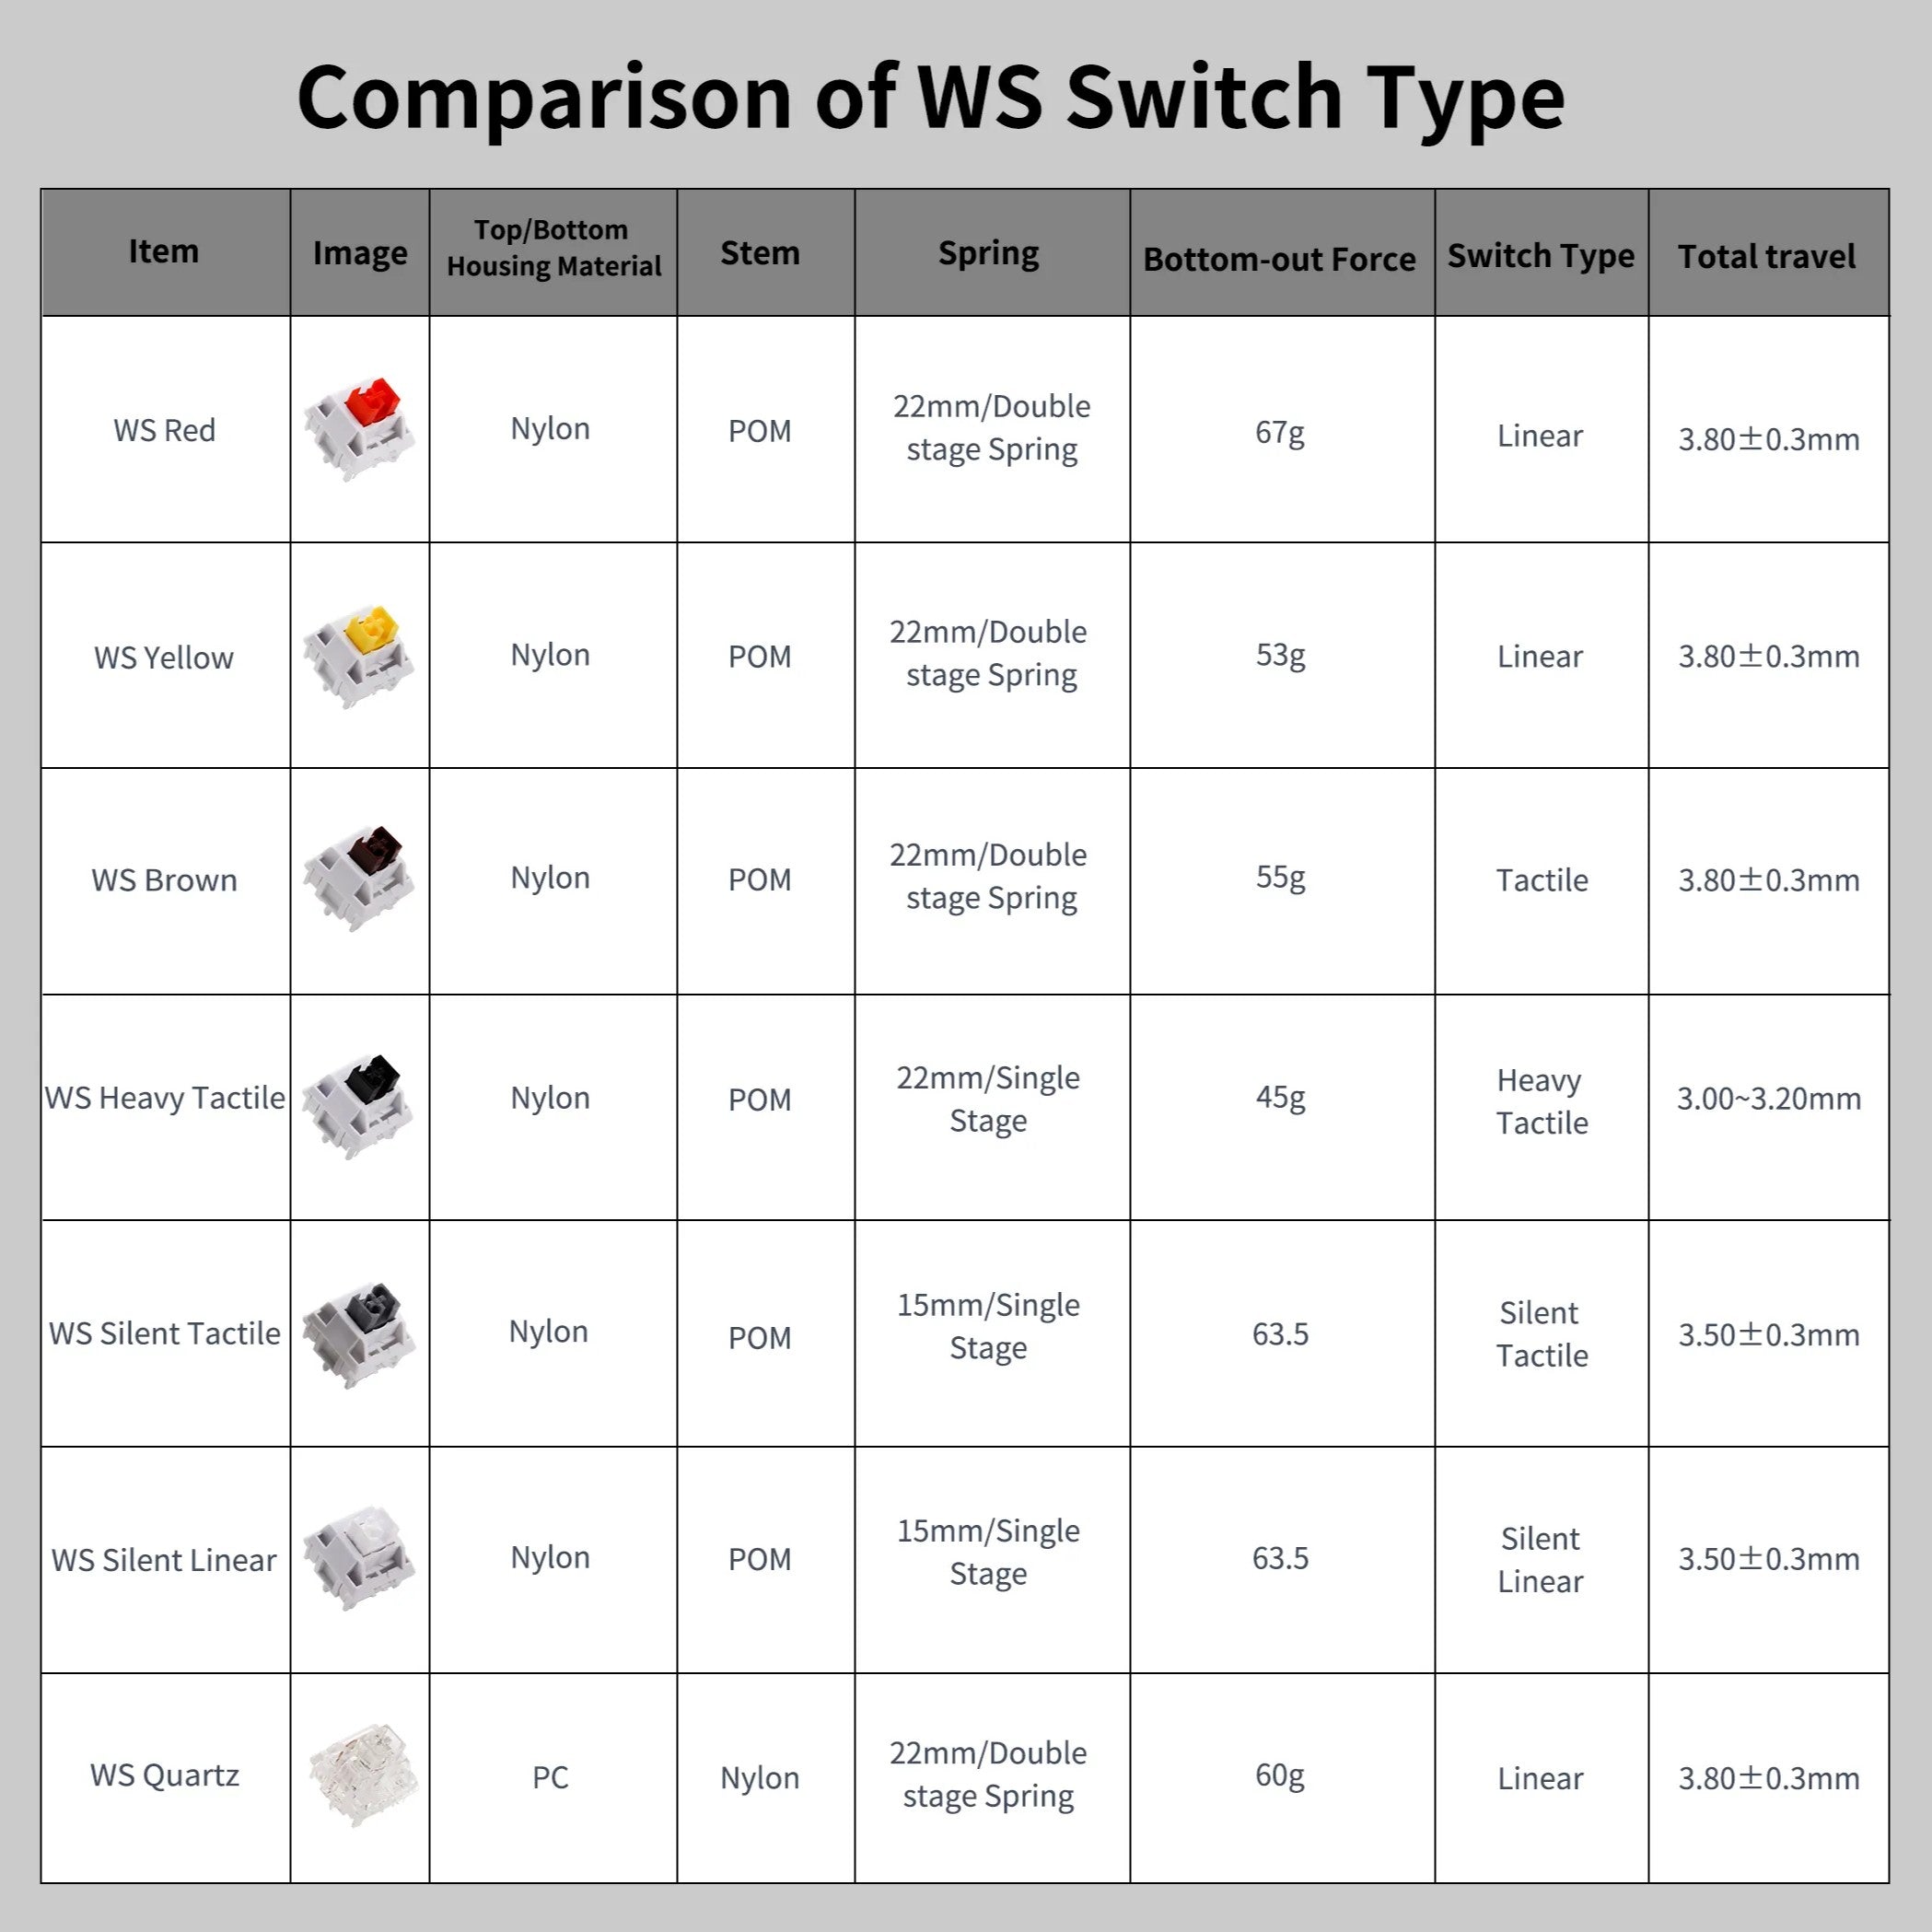 WS Quartz Switch